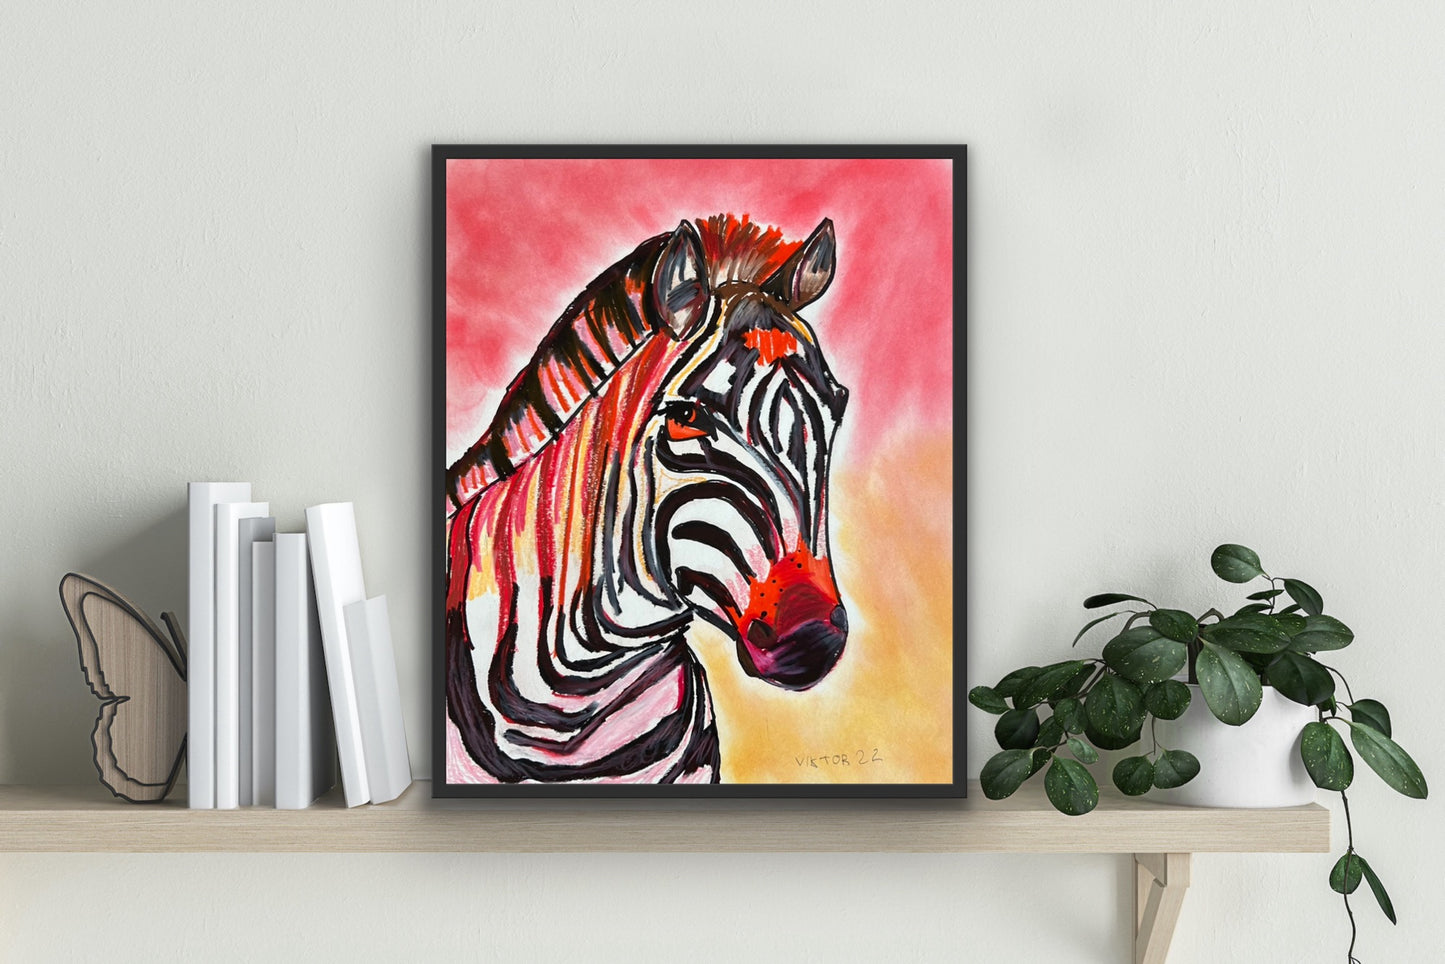 Red Zebra - ORIGINAL 14x17” FRAMED